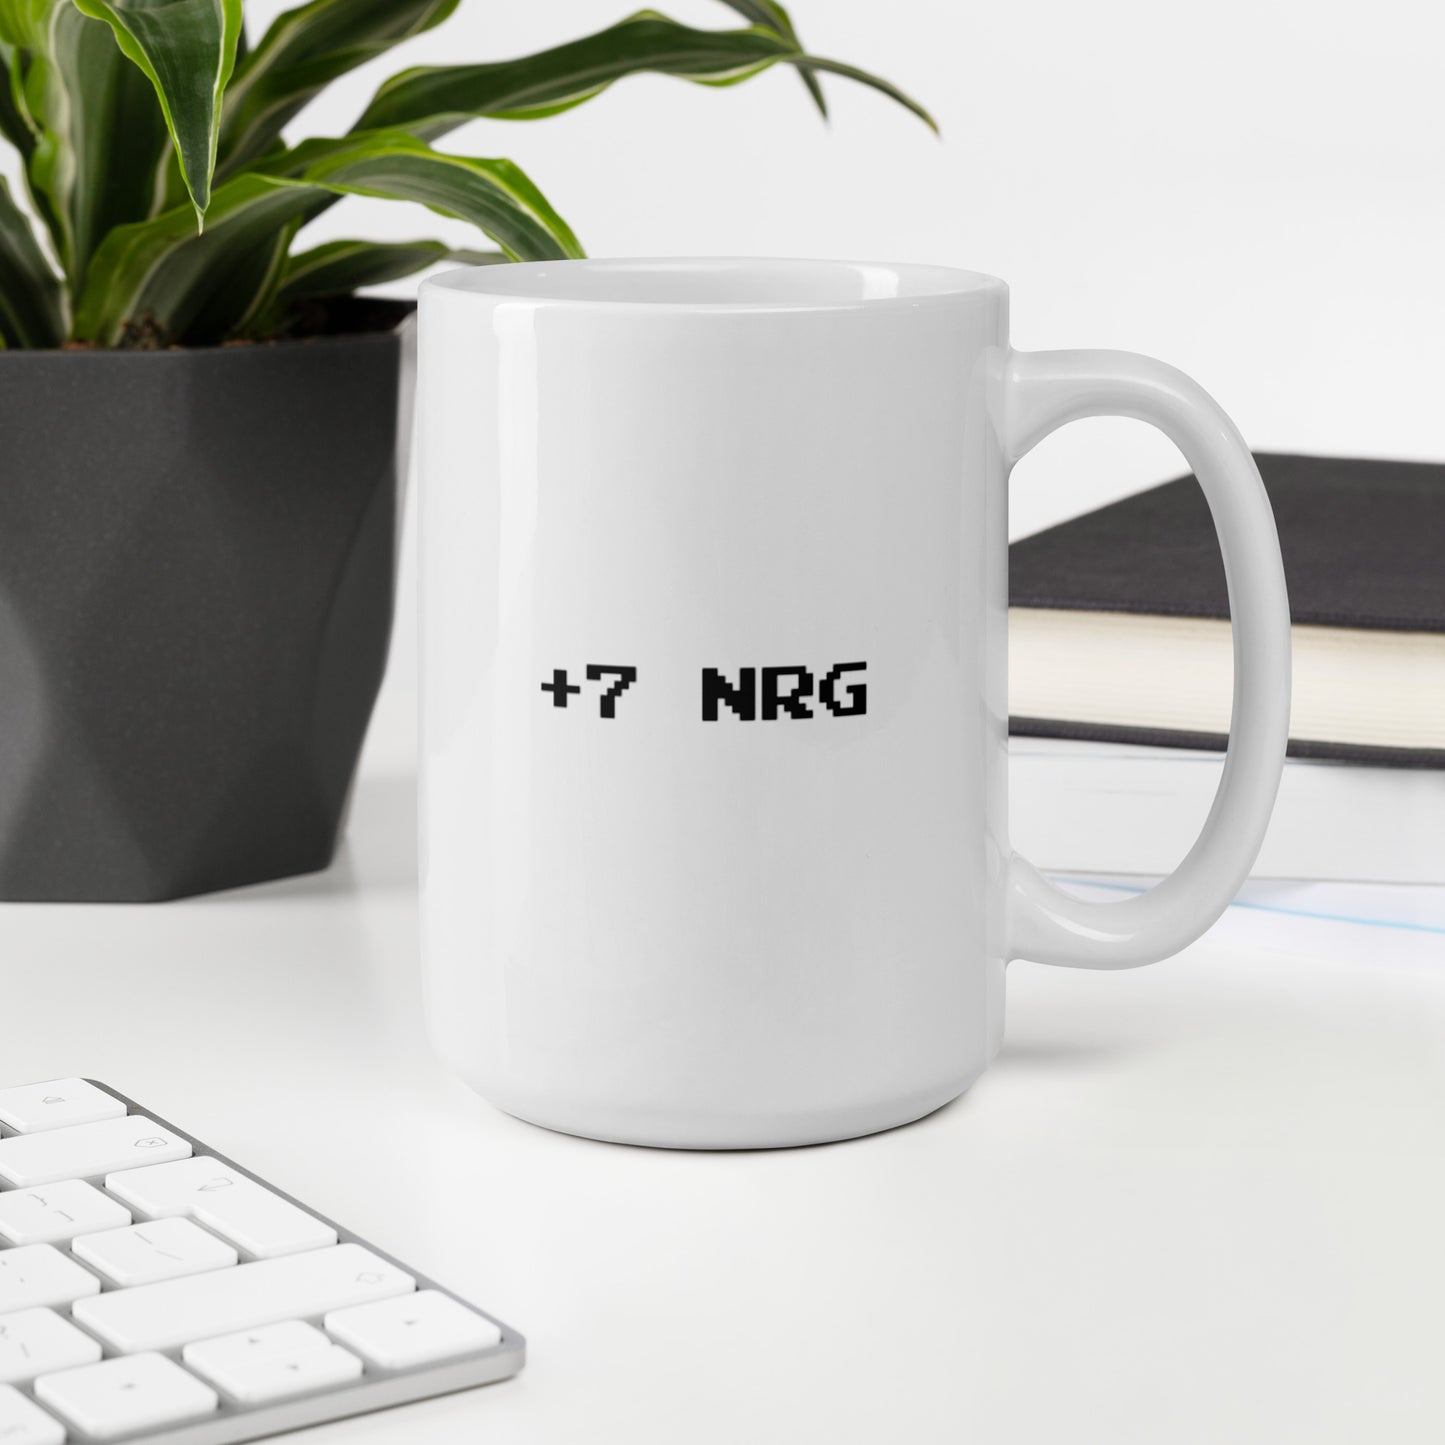 +7 NRG - Mug